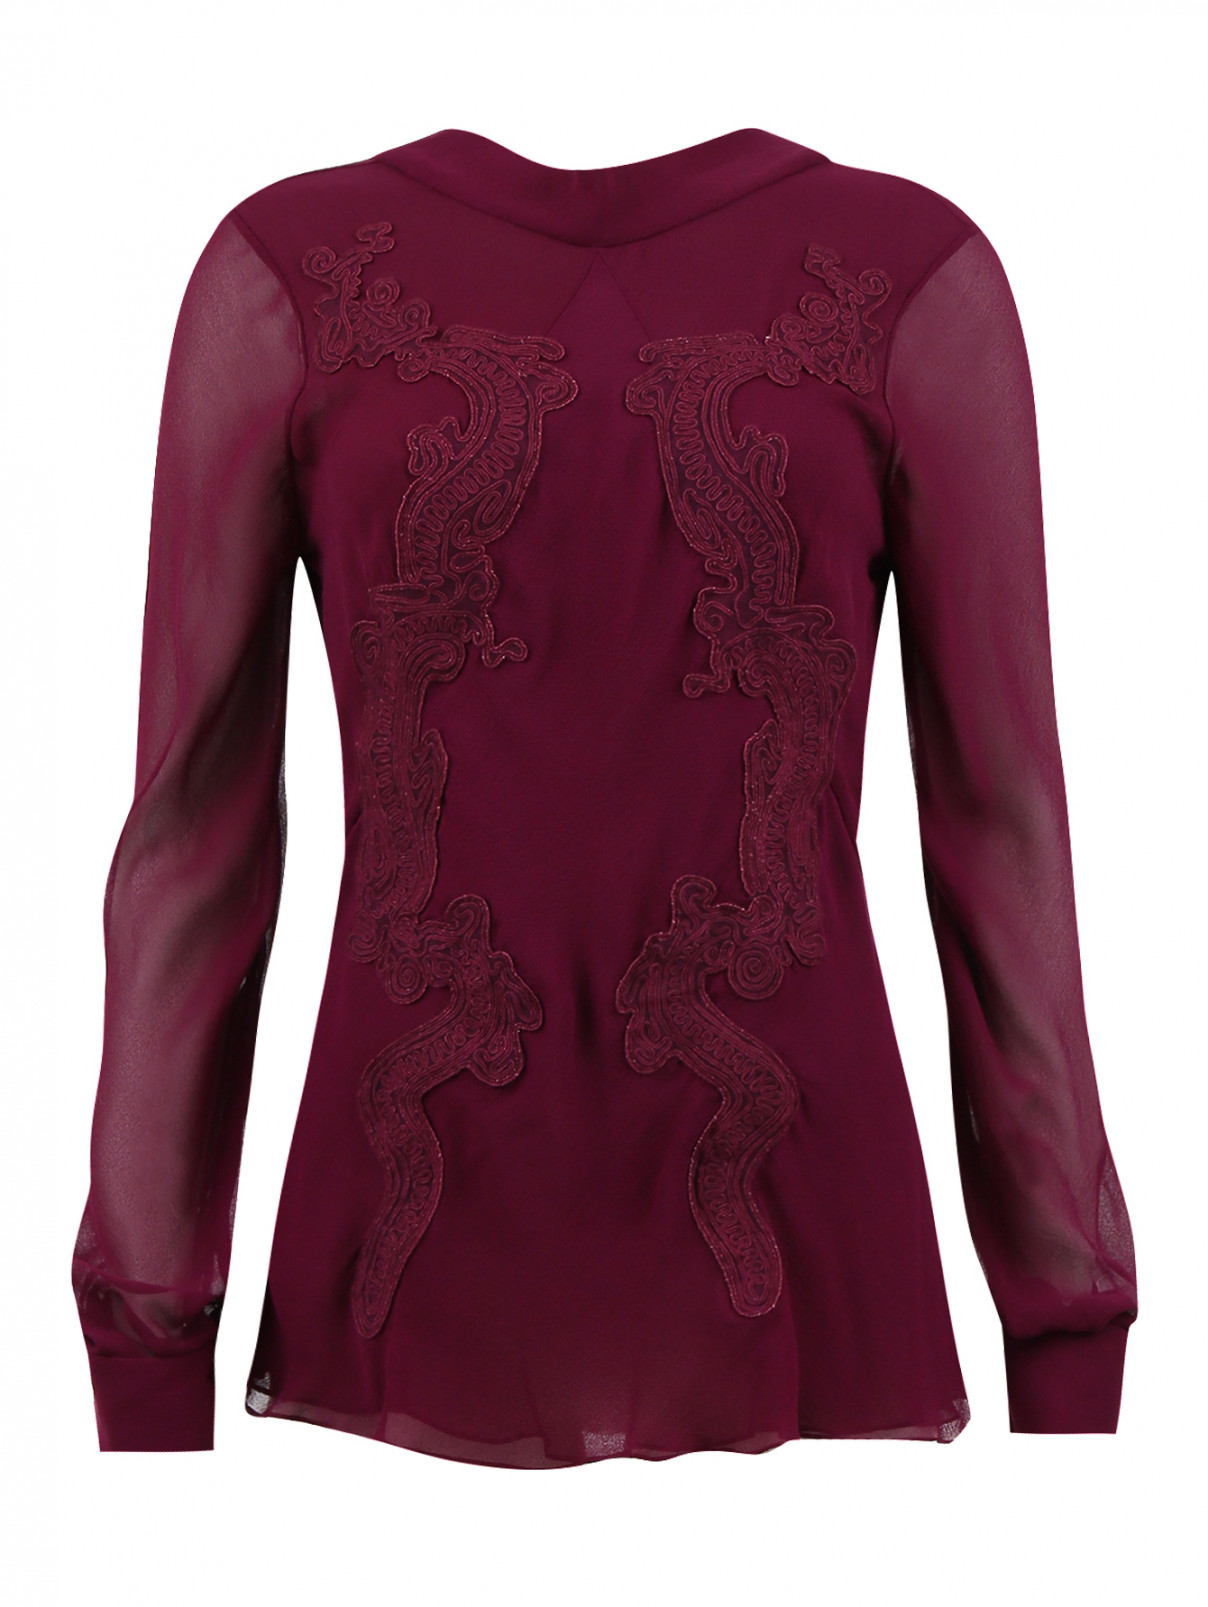 Приталенная блуза из шелка с аппликацией Zac Posen  –  Общий вид  – Цвет:  Фиолетовый